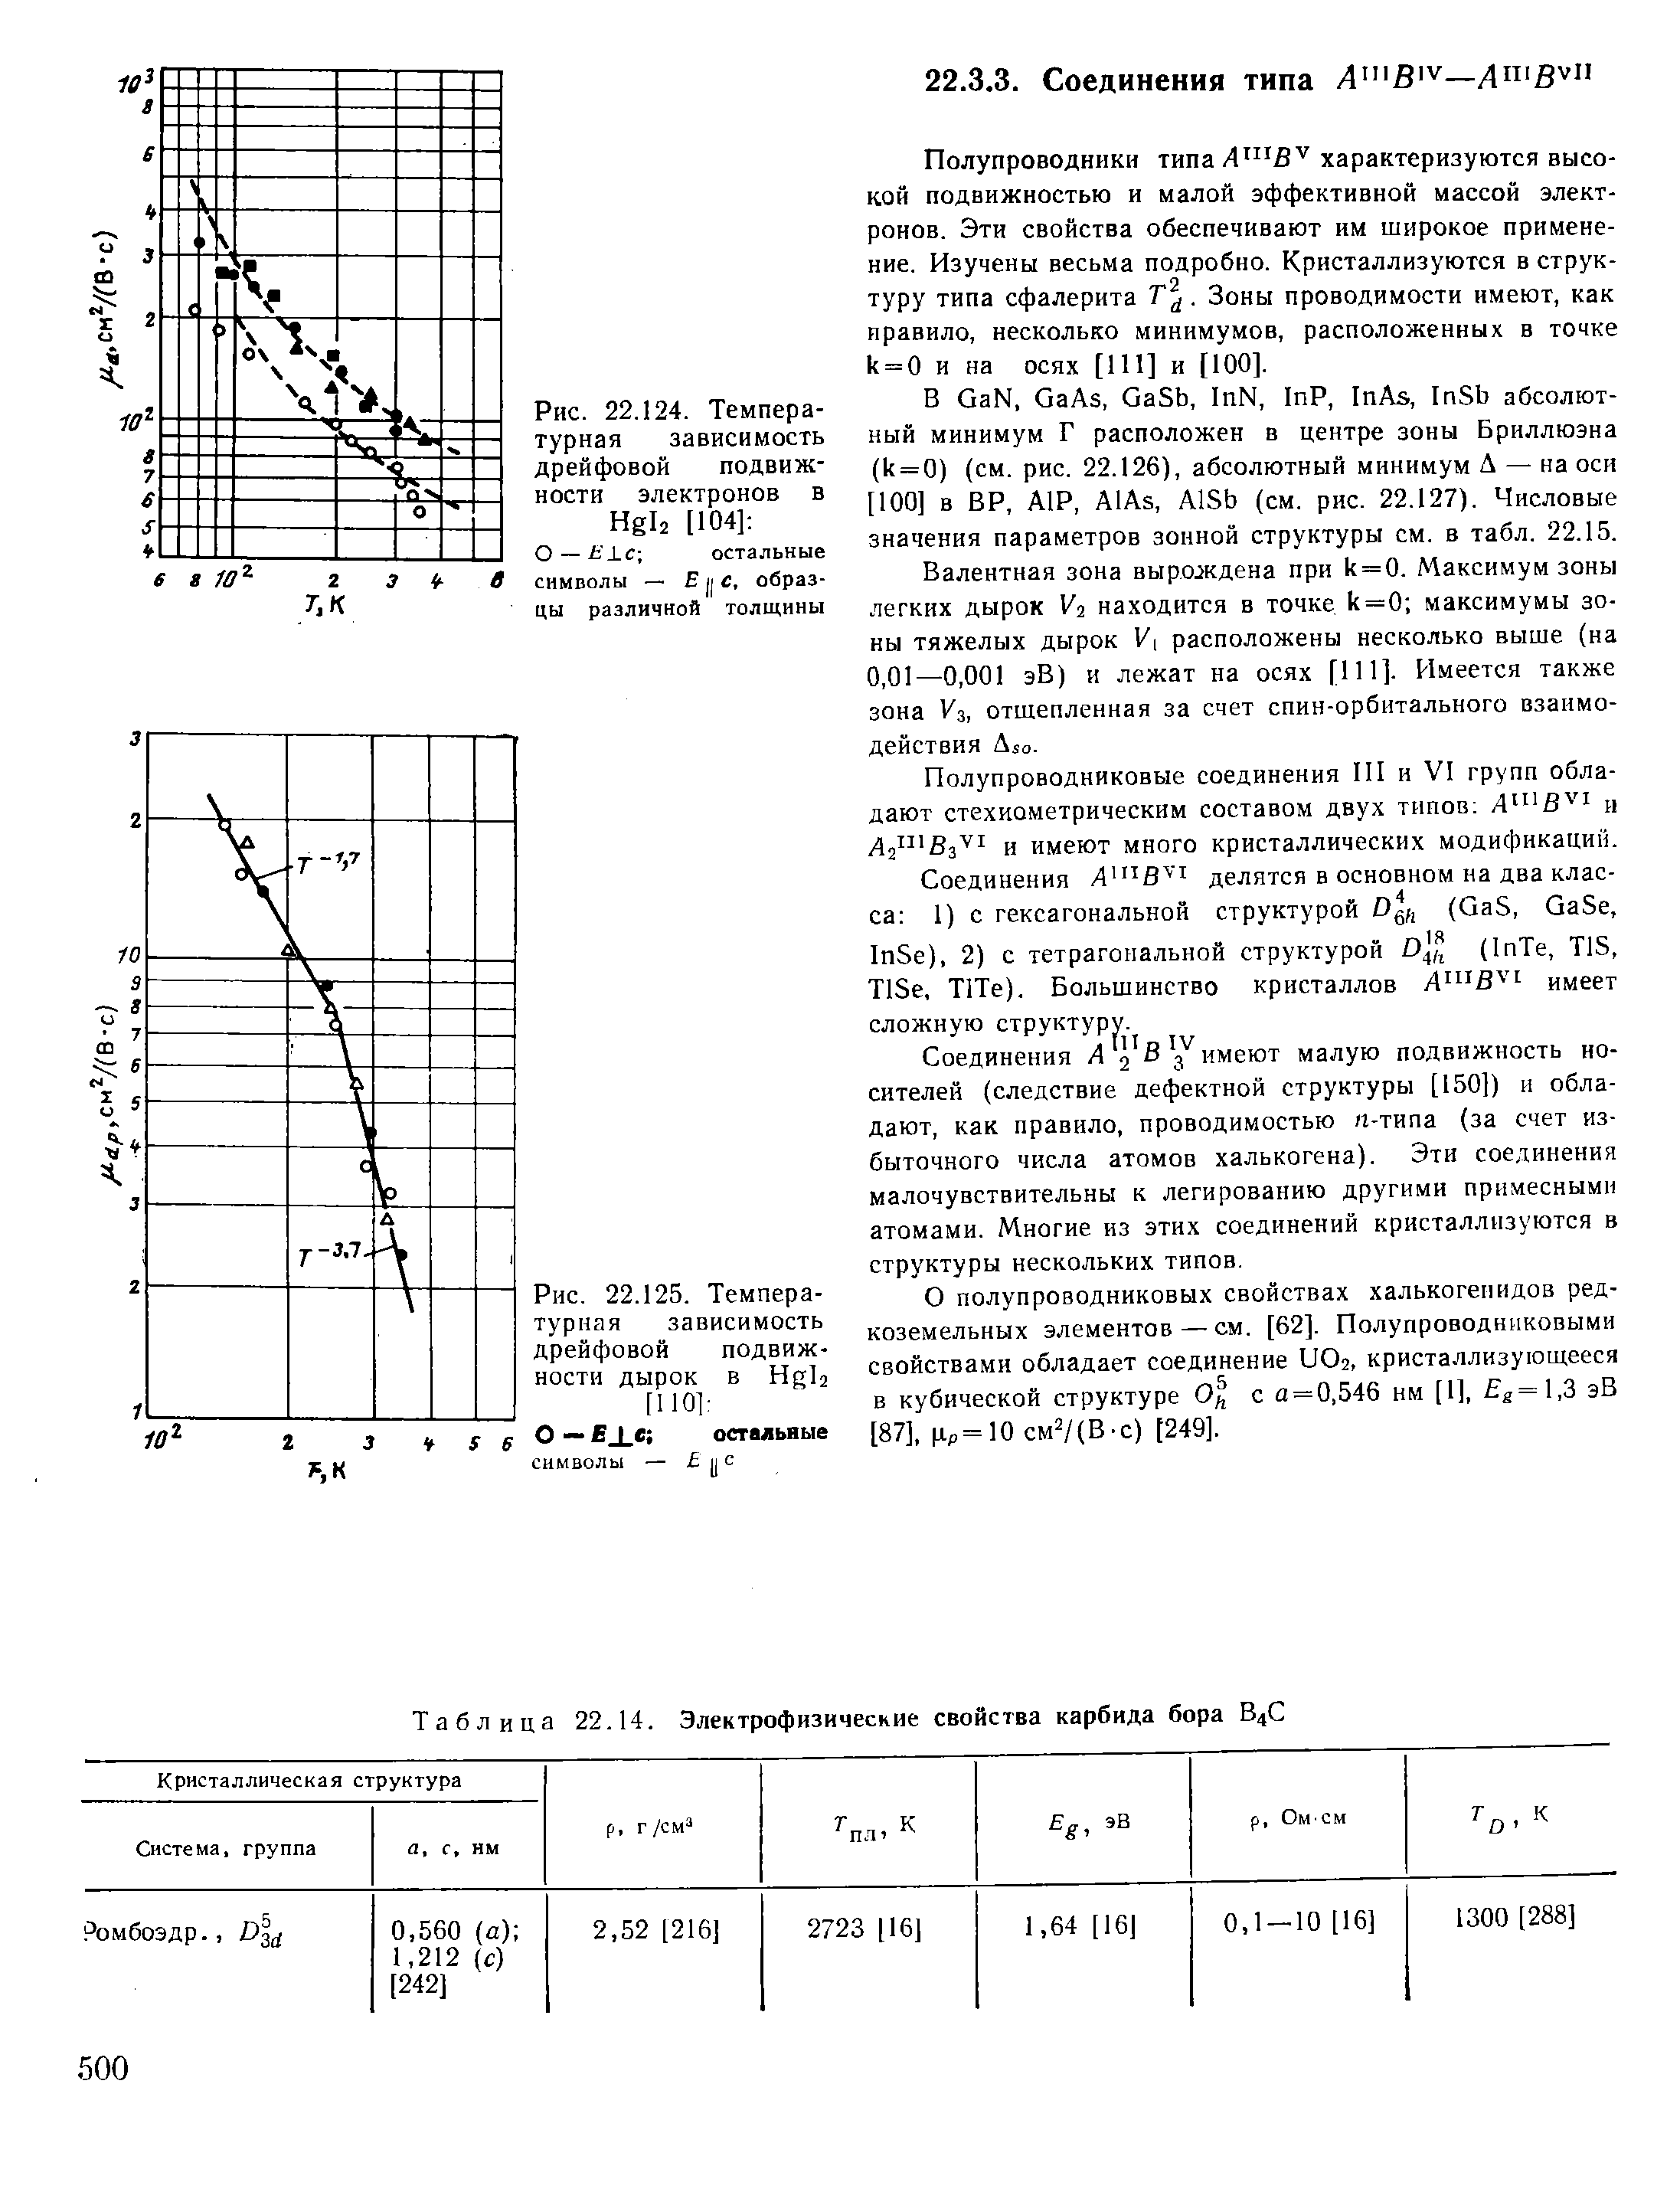 Таблица 22.14. Электрофизические свойства карбида бора В4С
